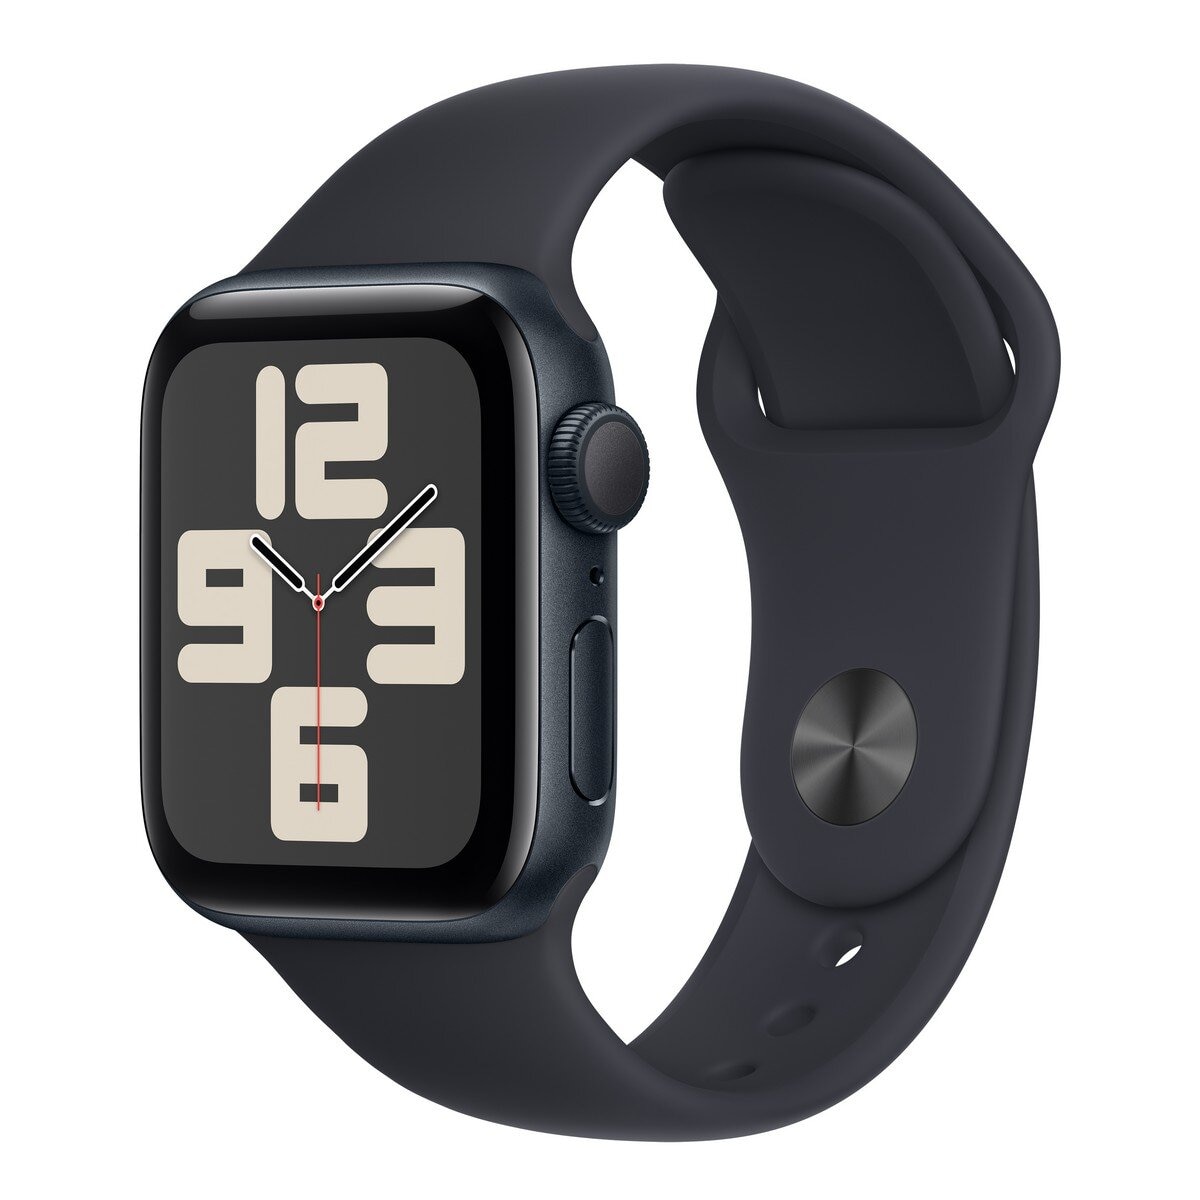 Apple Watch SE (GPS) 44公釐午夜色鋁金屬 午夜色運動型錶帶